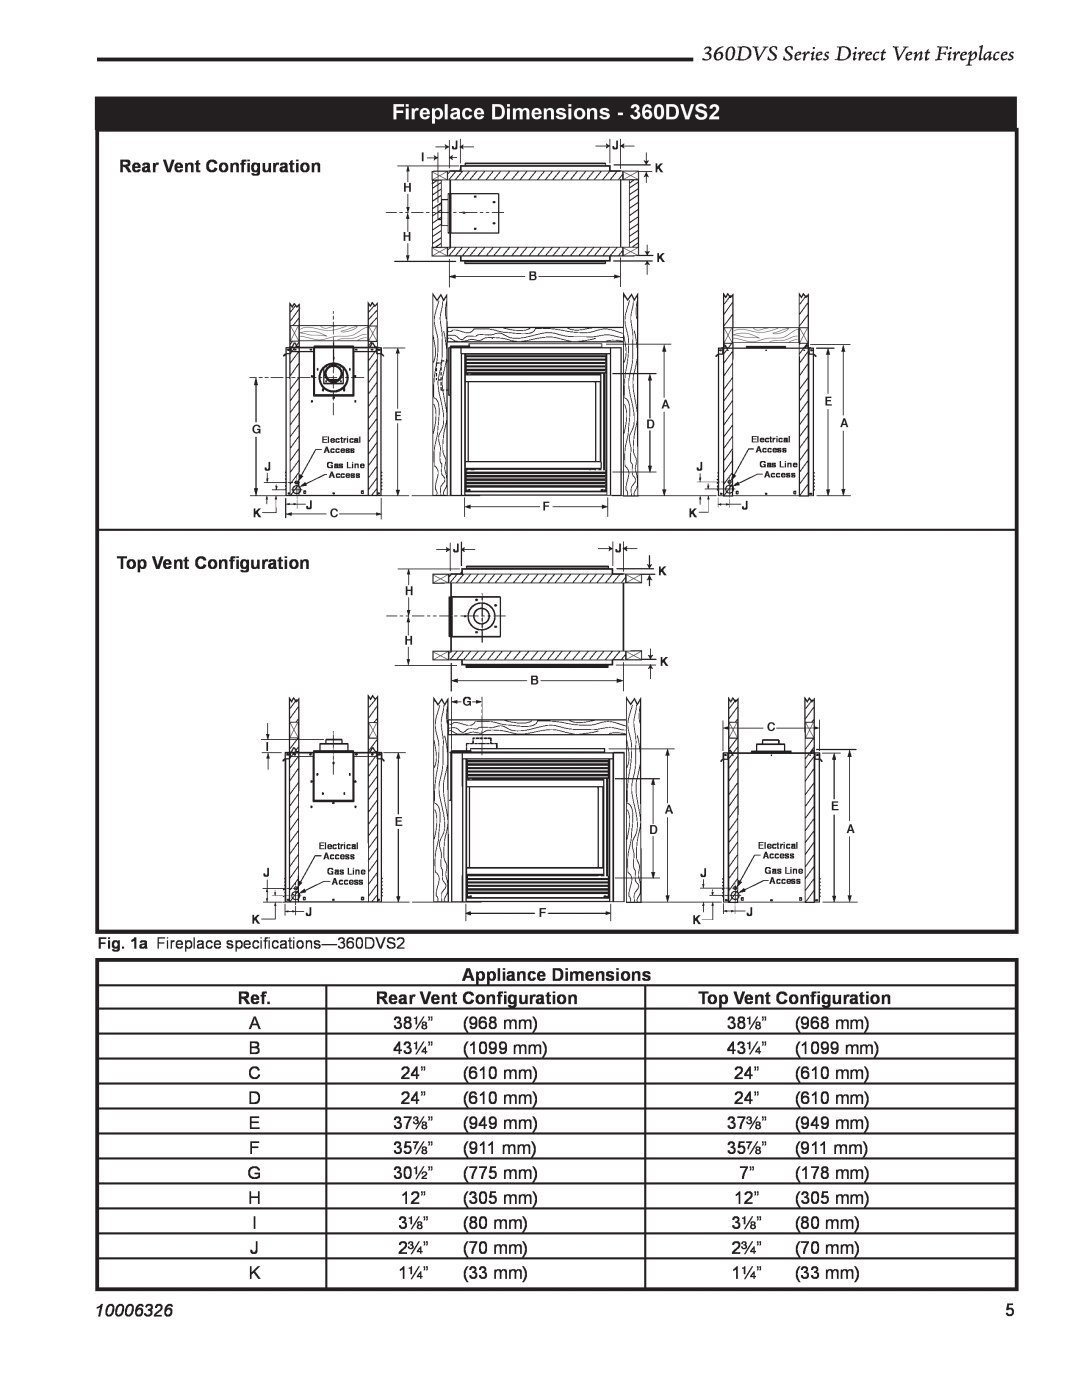 Majestic Appliances 360DVSL Fireplace Dimensions - 360DVS2, 360DVS Series Direct Vent Fireplaces, Rear Vent Conﬁguration 